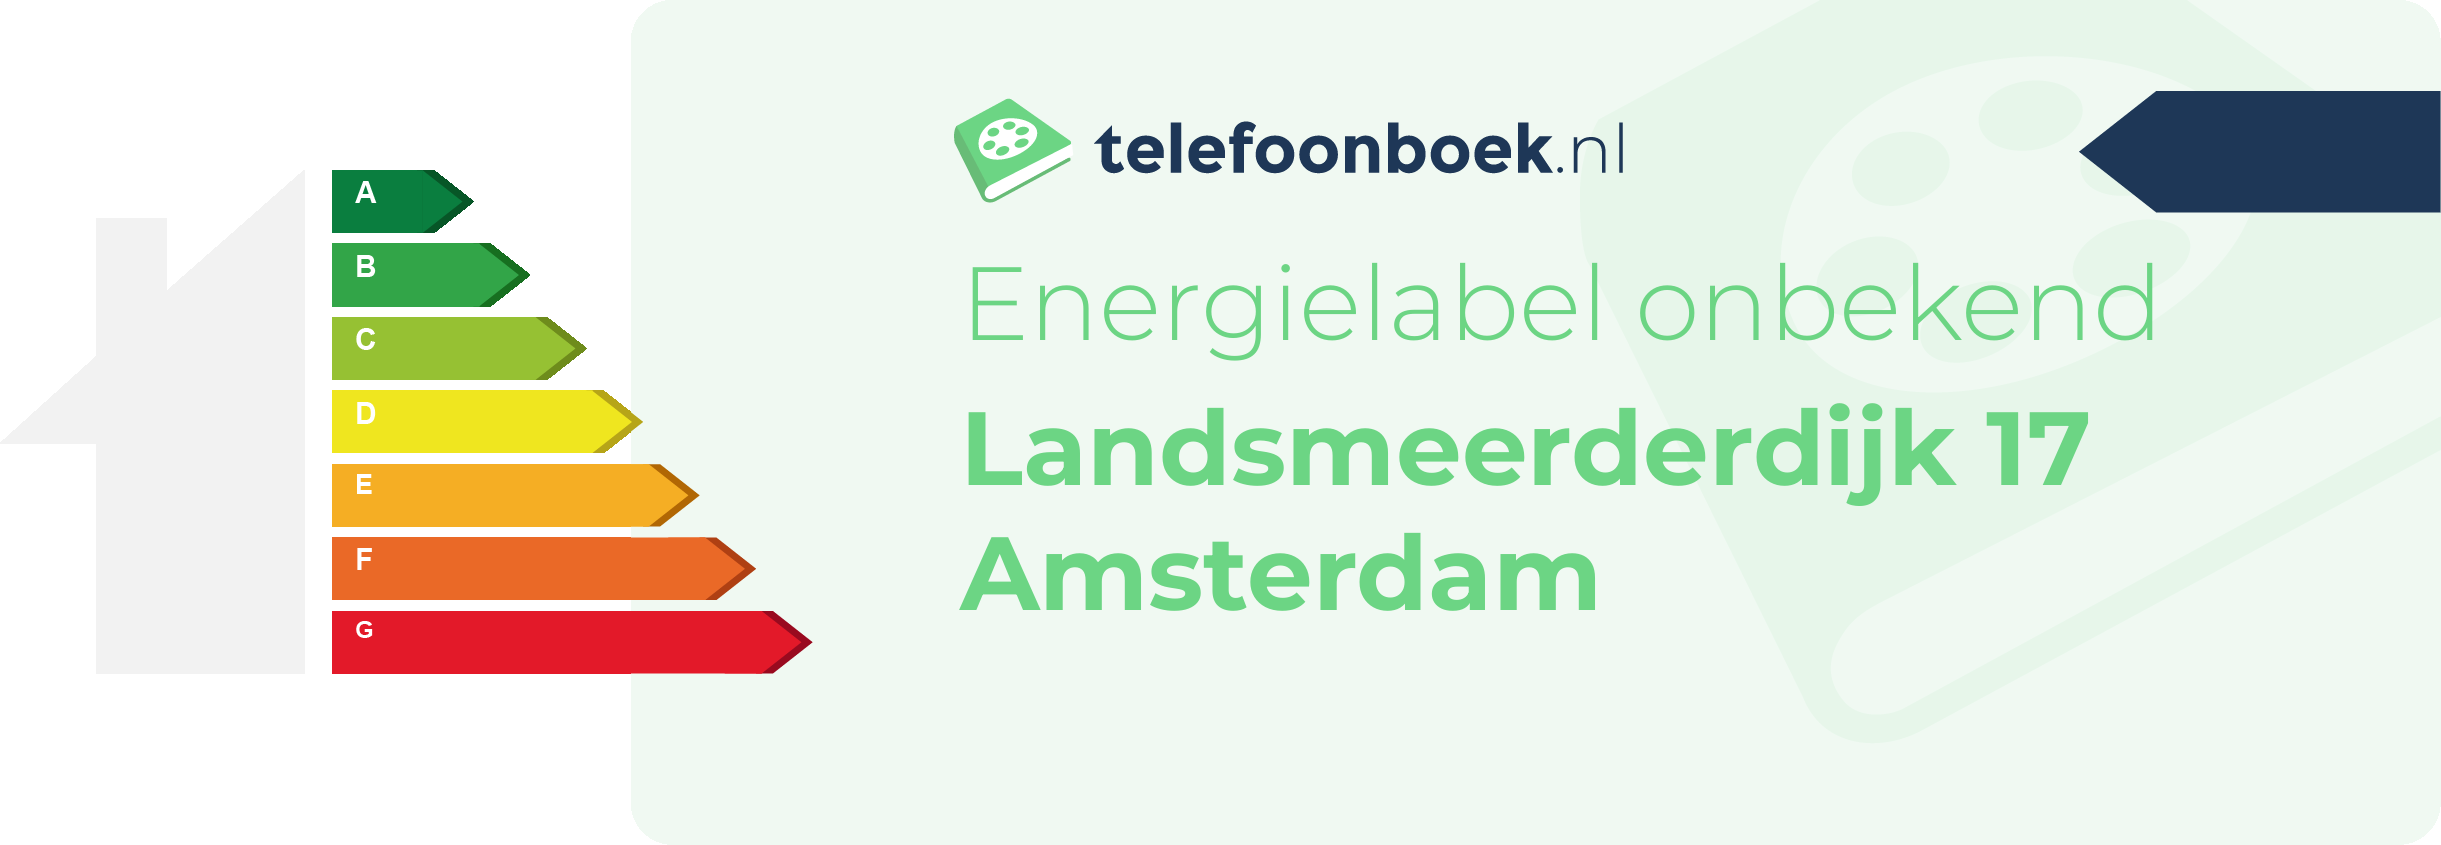 Energielabel Landsmeerderdijk 17 Amsterdam